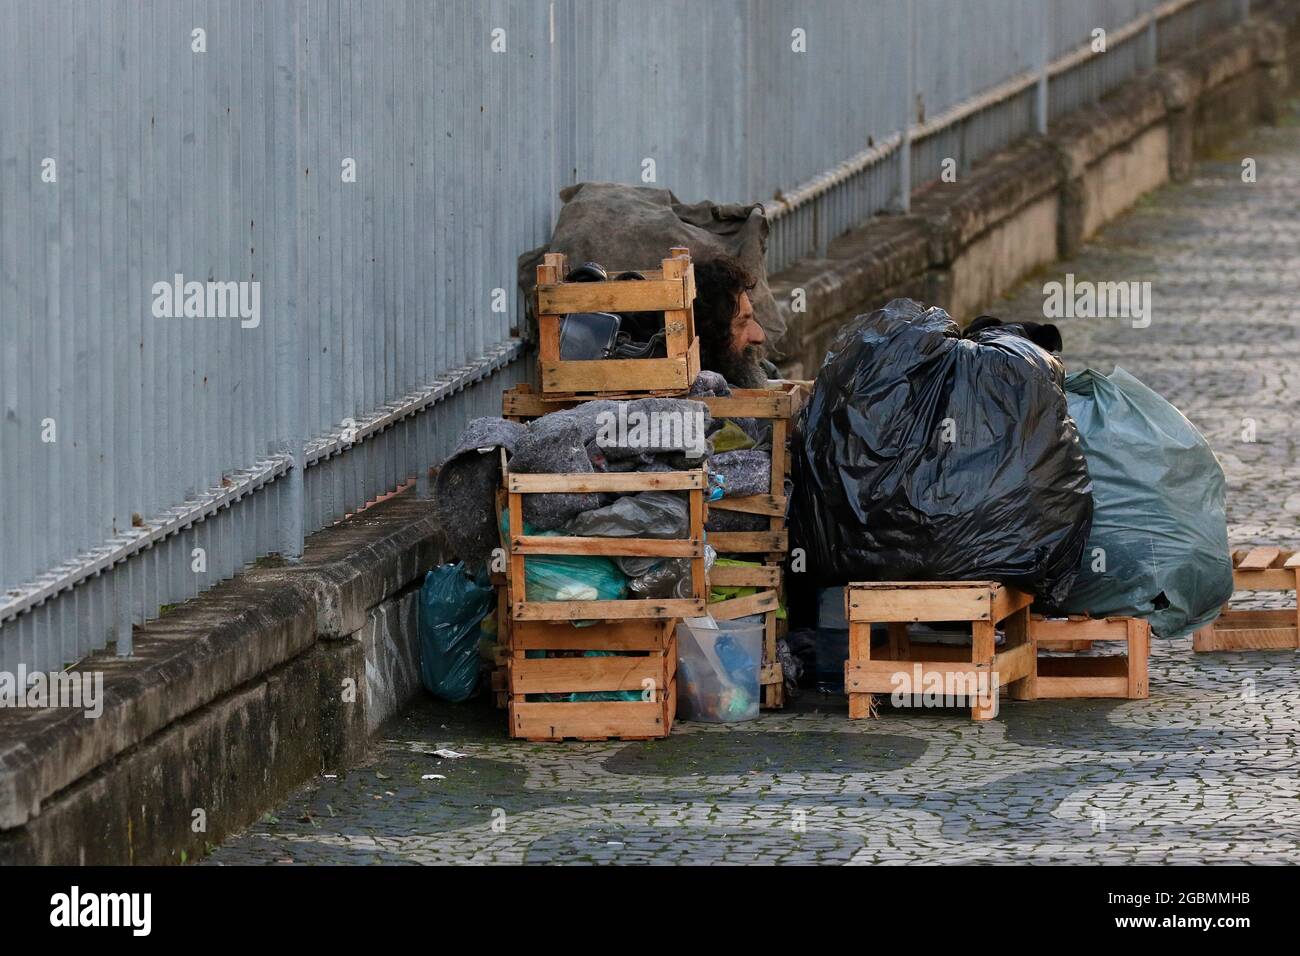 Homme sans abri, mendiant vivant sur un trottoir pendant la crise économique au centre-ville, à la recherche d'aide, faim. Pauvreté situation vulnérable, questions sociales en lat Banque D'Images